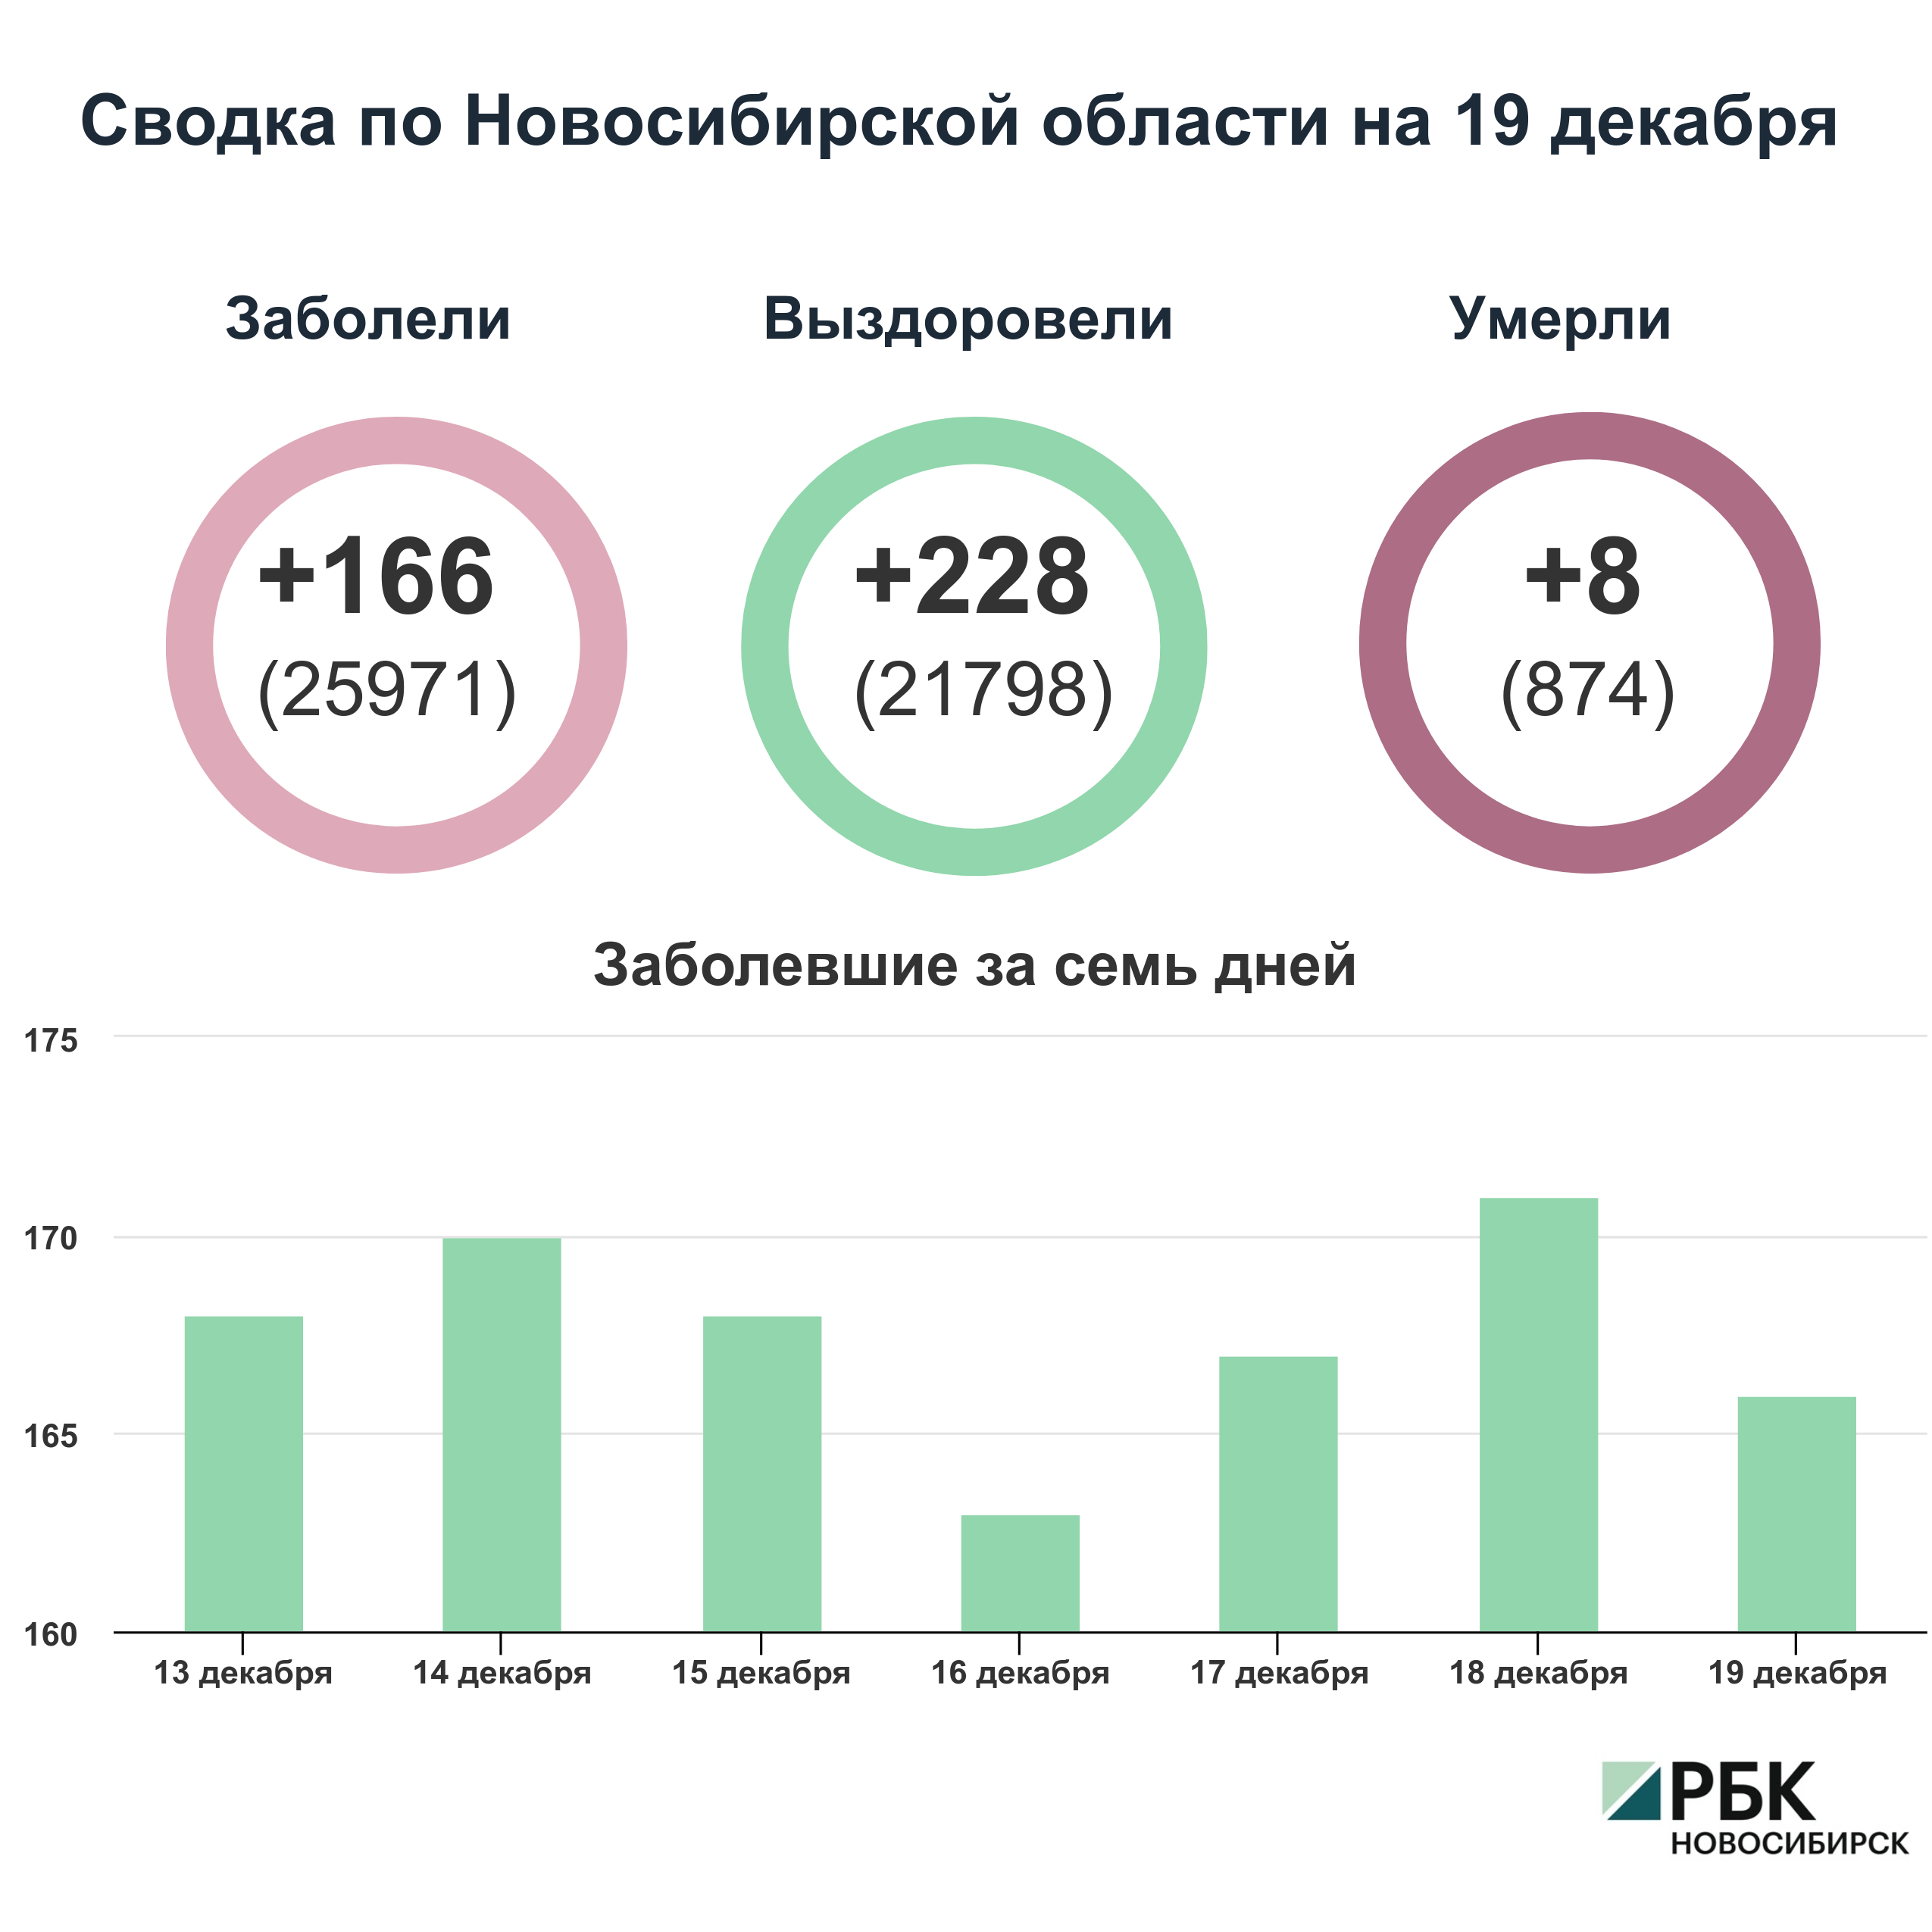 Коронавирус в Новосибирске: сводка на 19 декабря